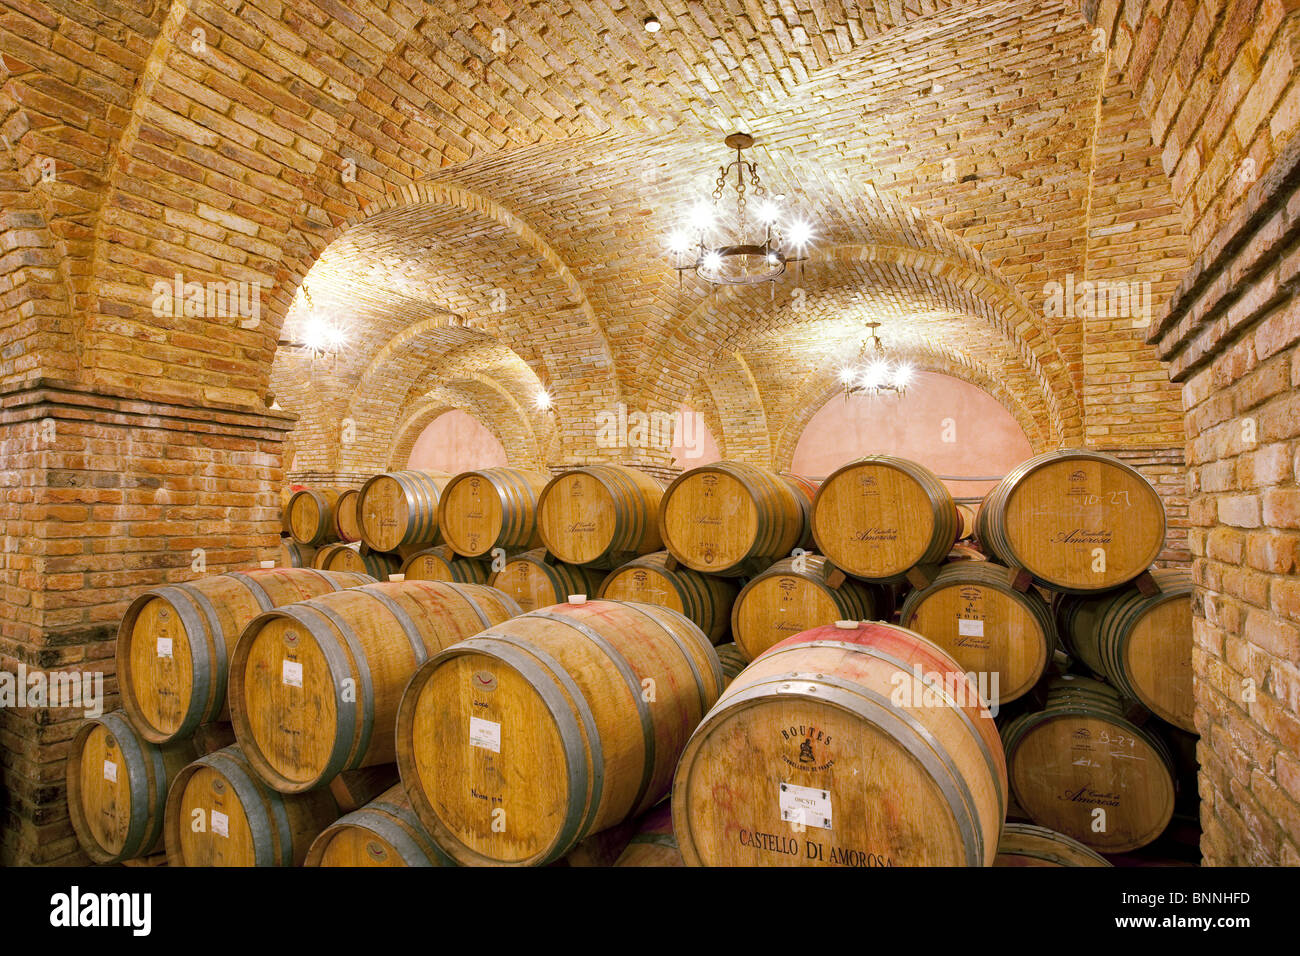 Alterung in Fässern im Keller Wein. Castello di Amerorosa. Napa Valley, Kalifornien. Eigentum freigegeben Stockfoto